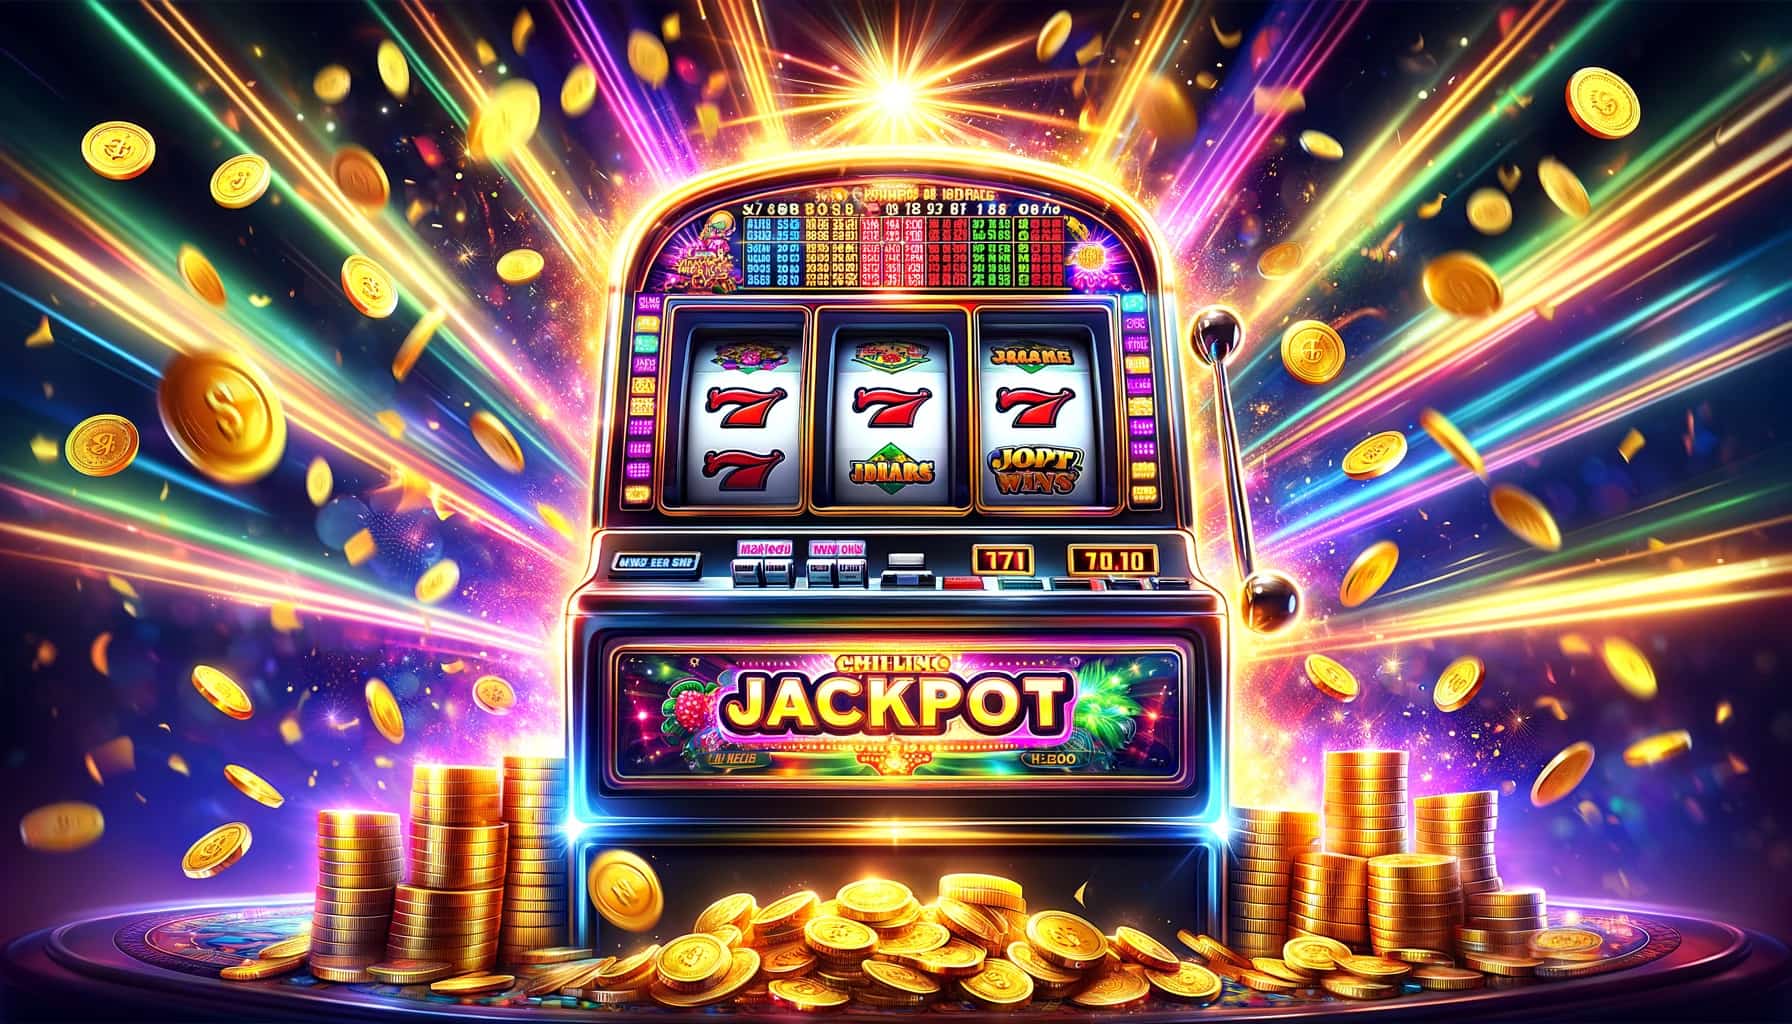 spilleautomat med jackpot casino bonus og stabler og hauger av mynter rundt